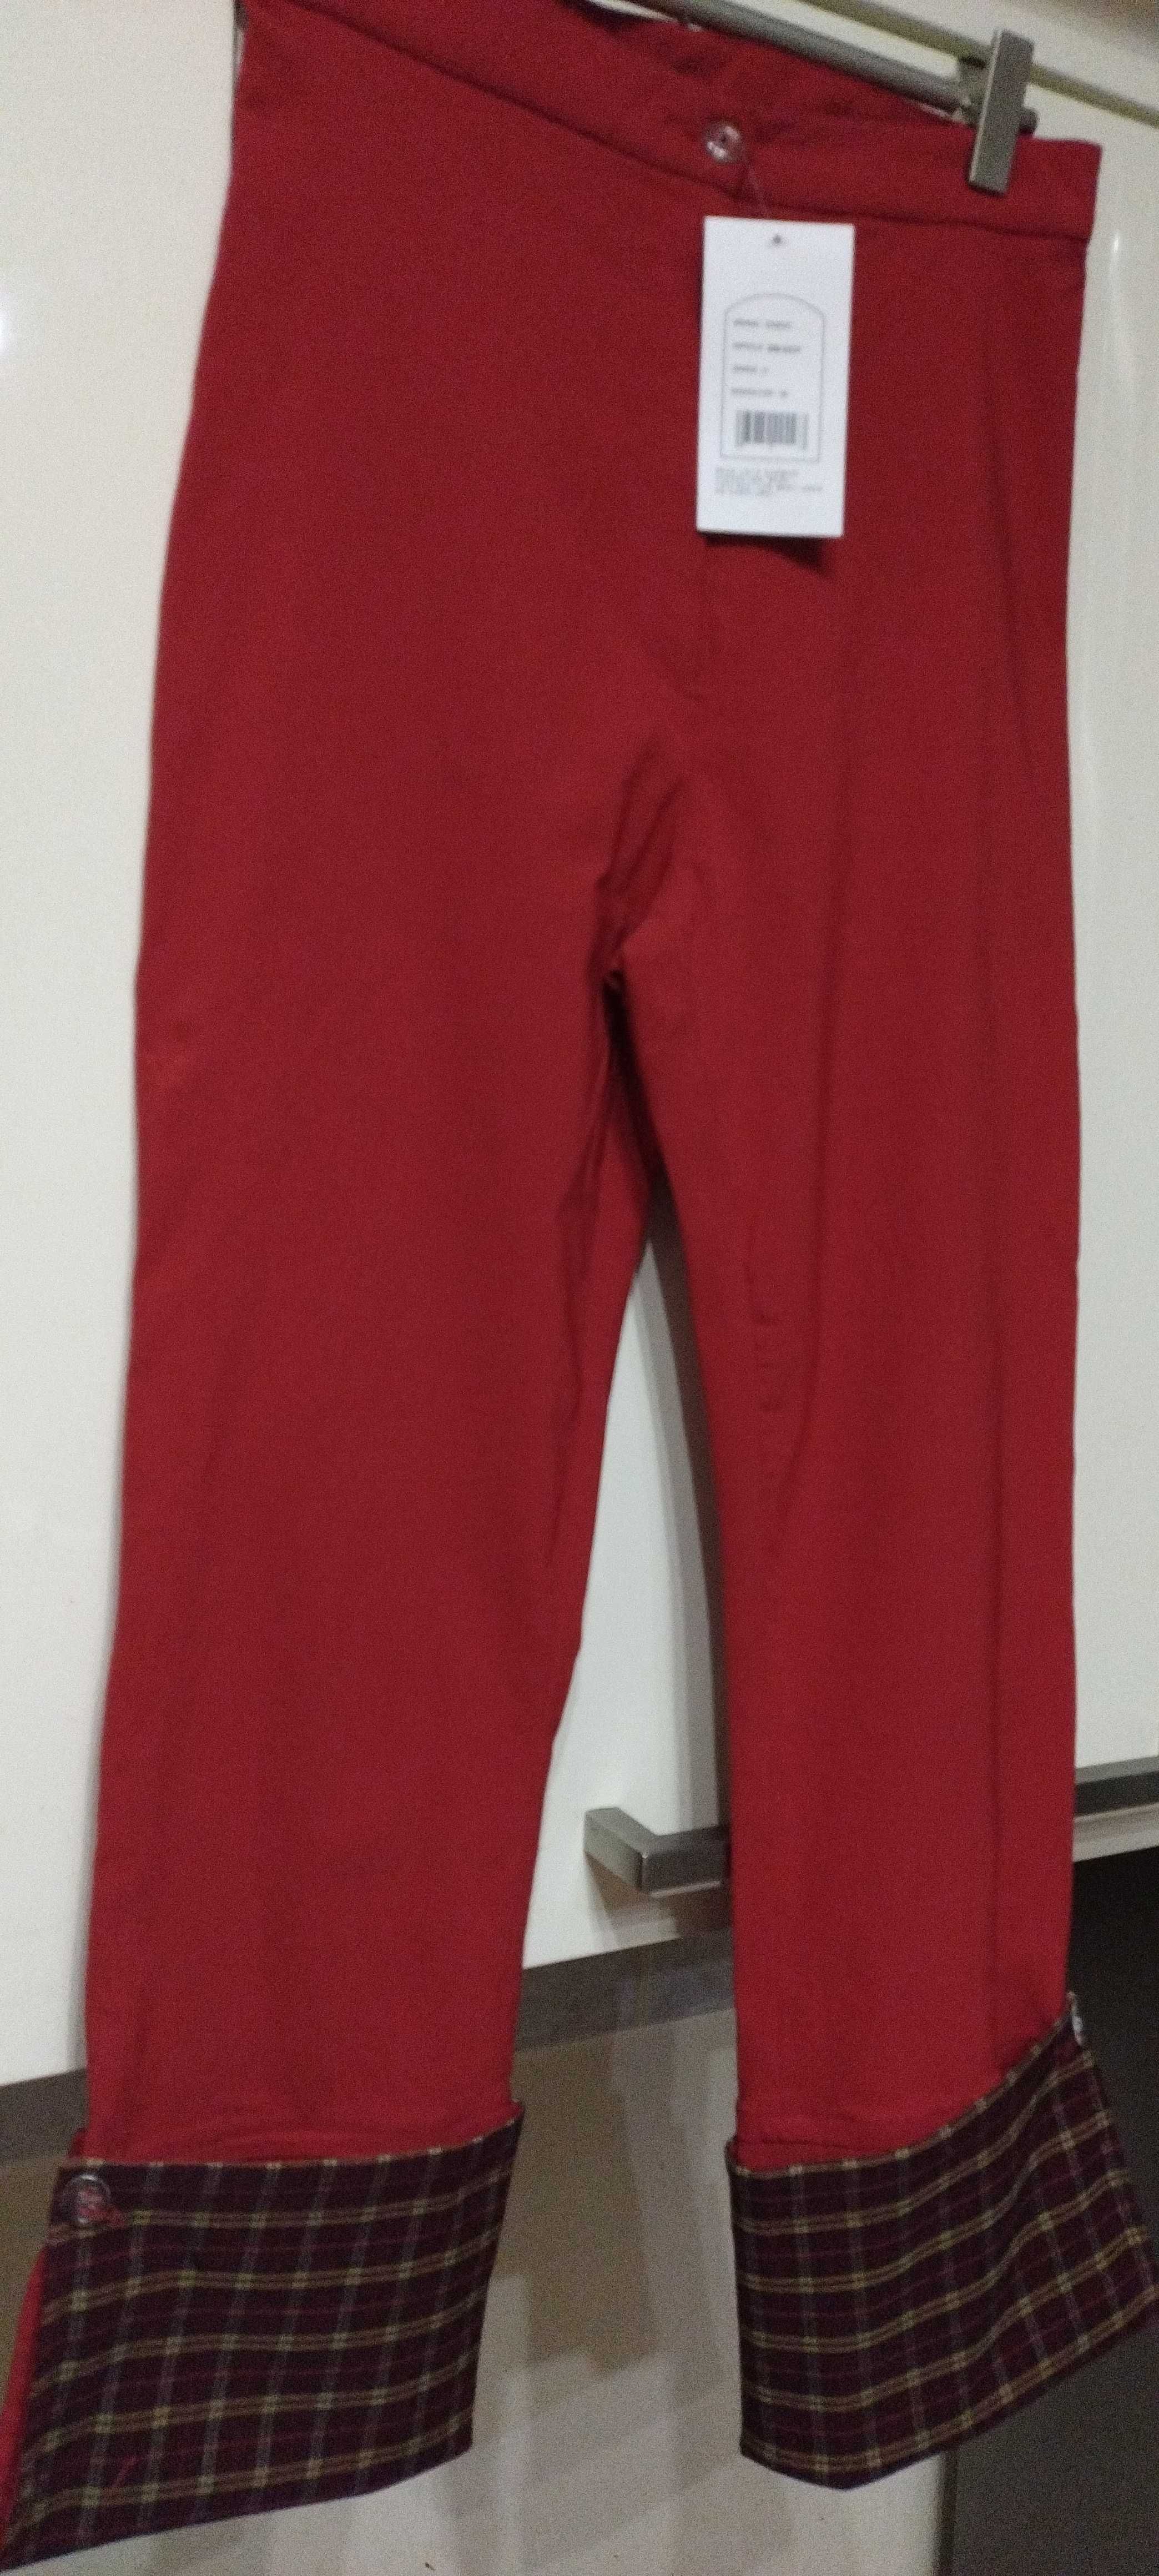 Spodnie czerwone proste .